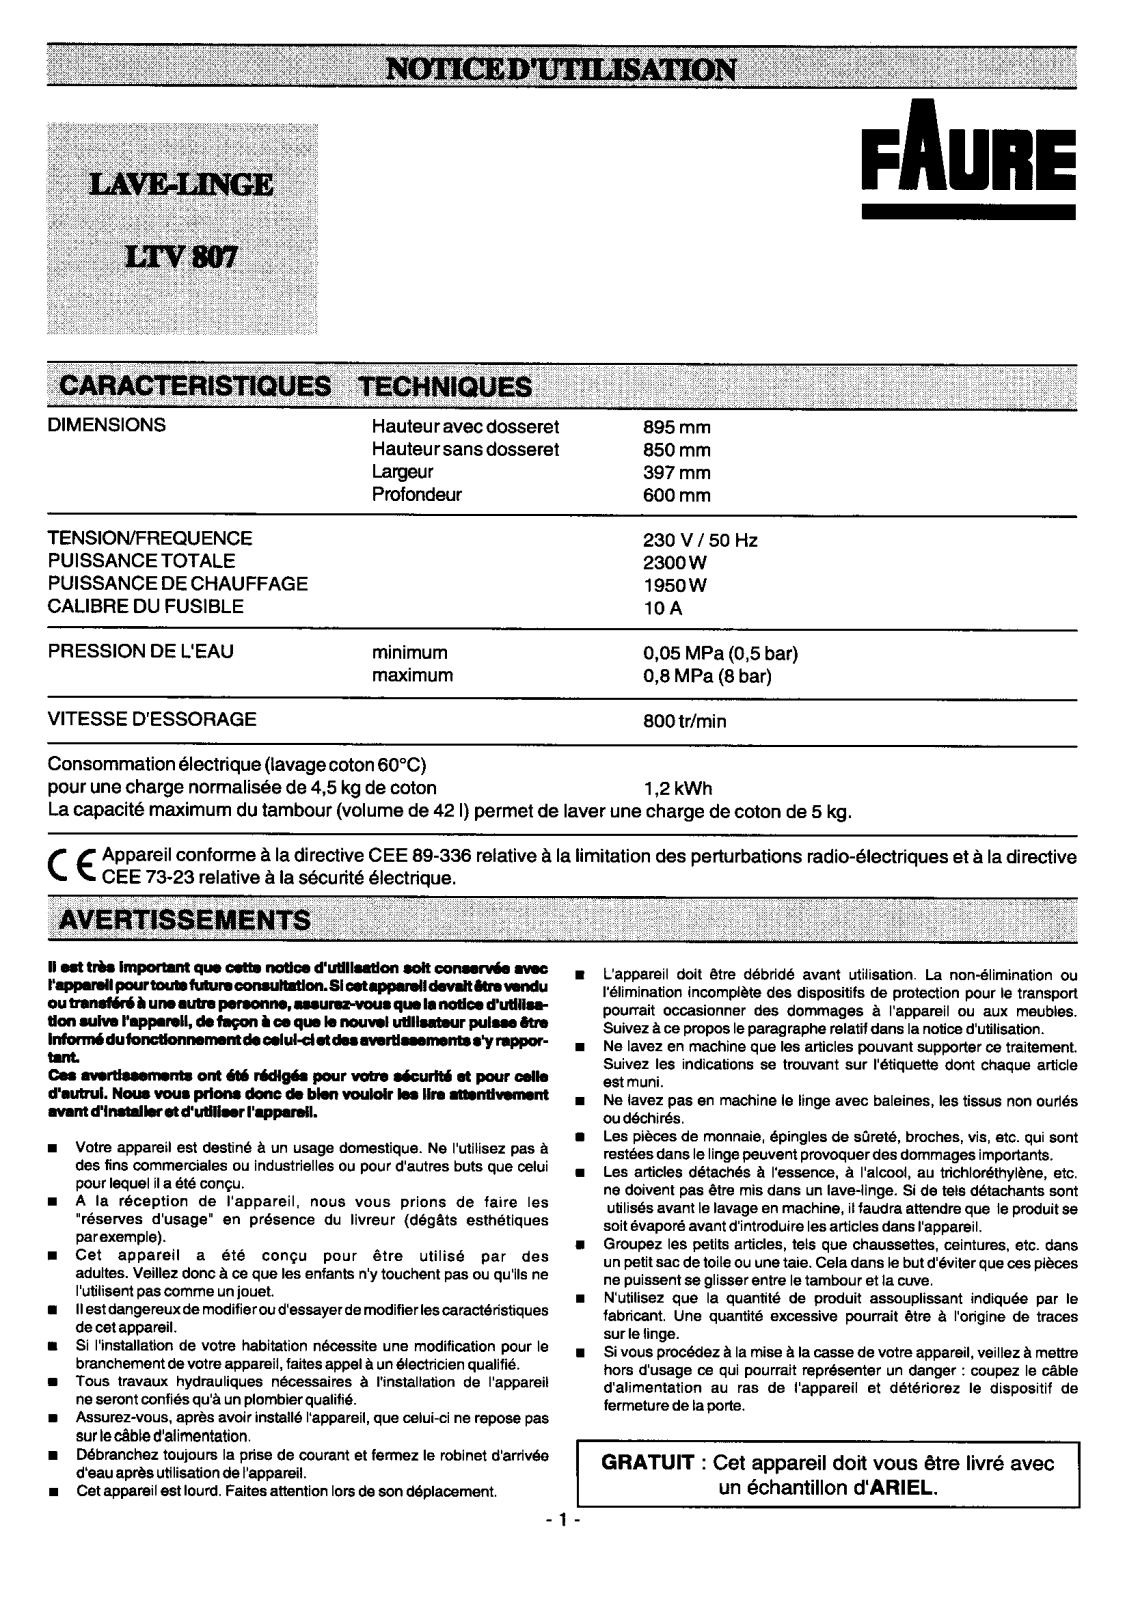 Faure LTV807 User Manual